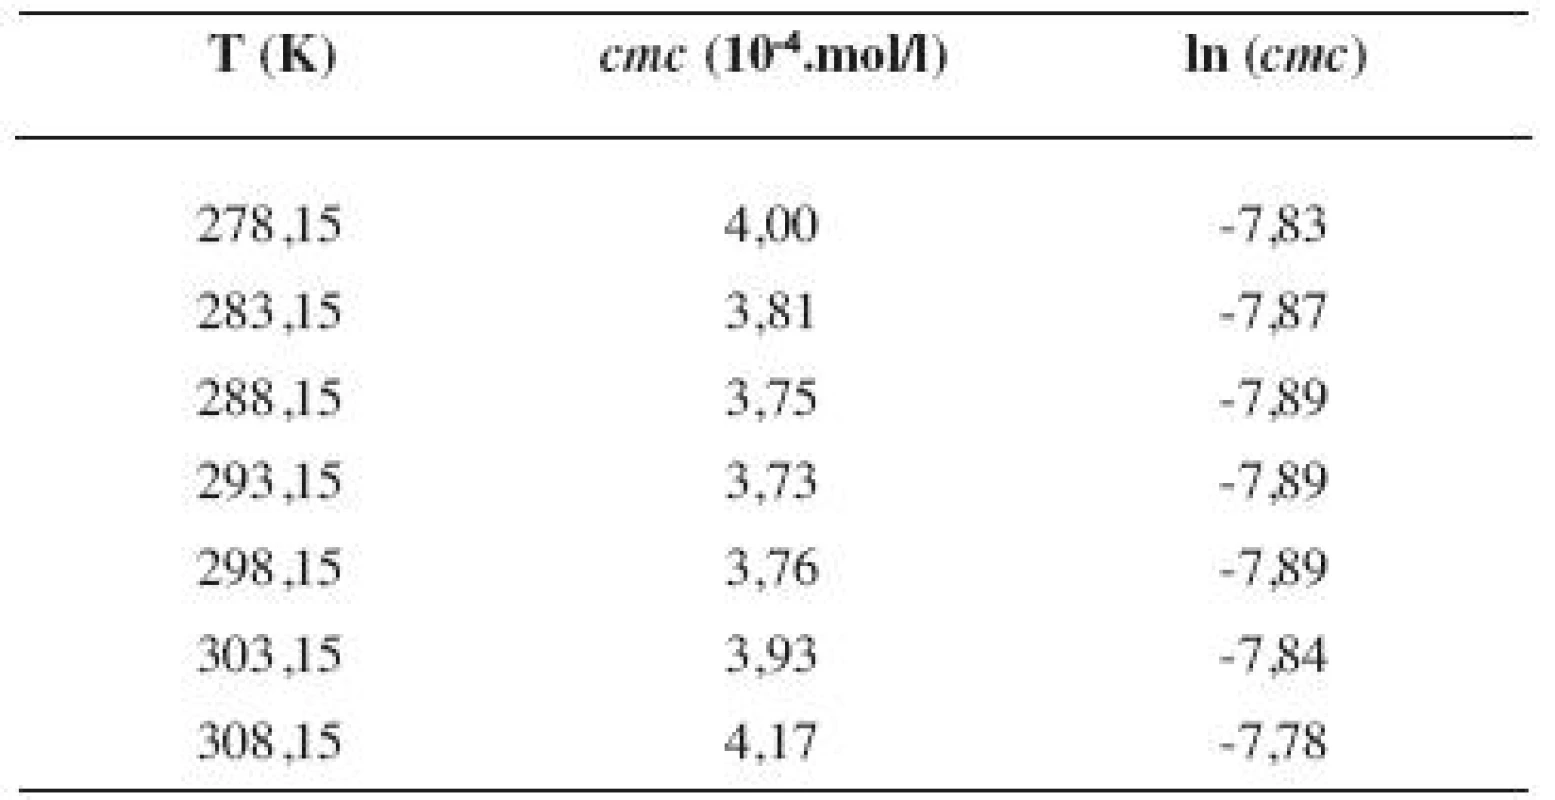 Zistené hodnoty &lt;i&gt;cmc&lt;/i&gt; a ln (&lt;i&gt;cmc&lt;/i&gt;) meranej látky v 3 mol/l etanolovom roztoku